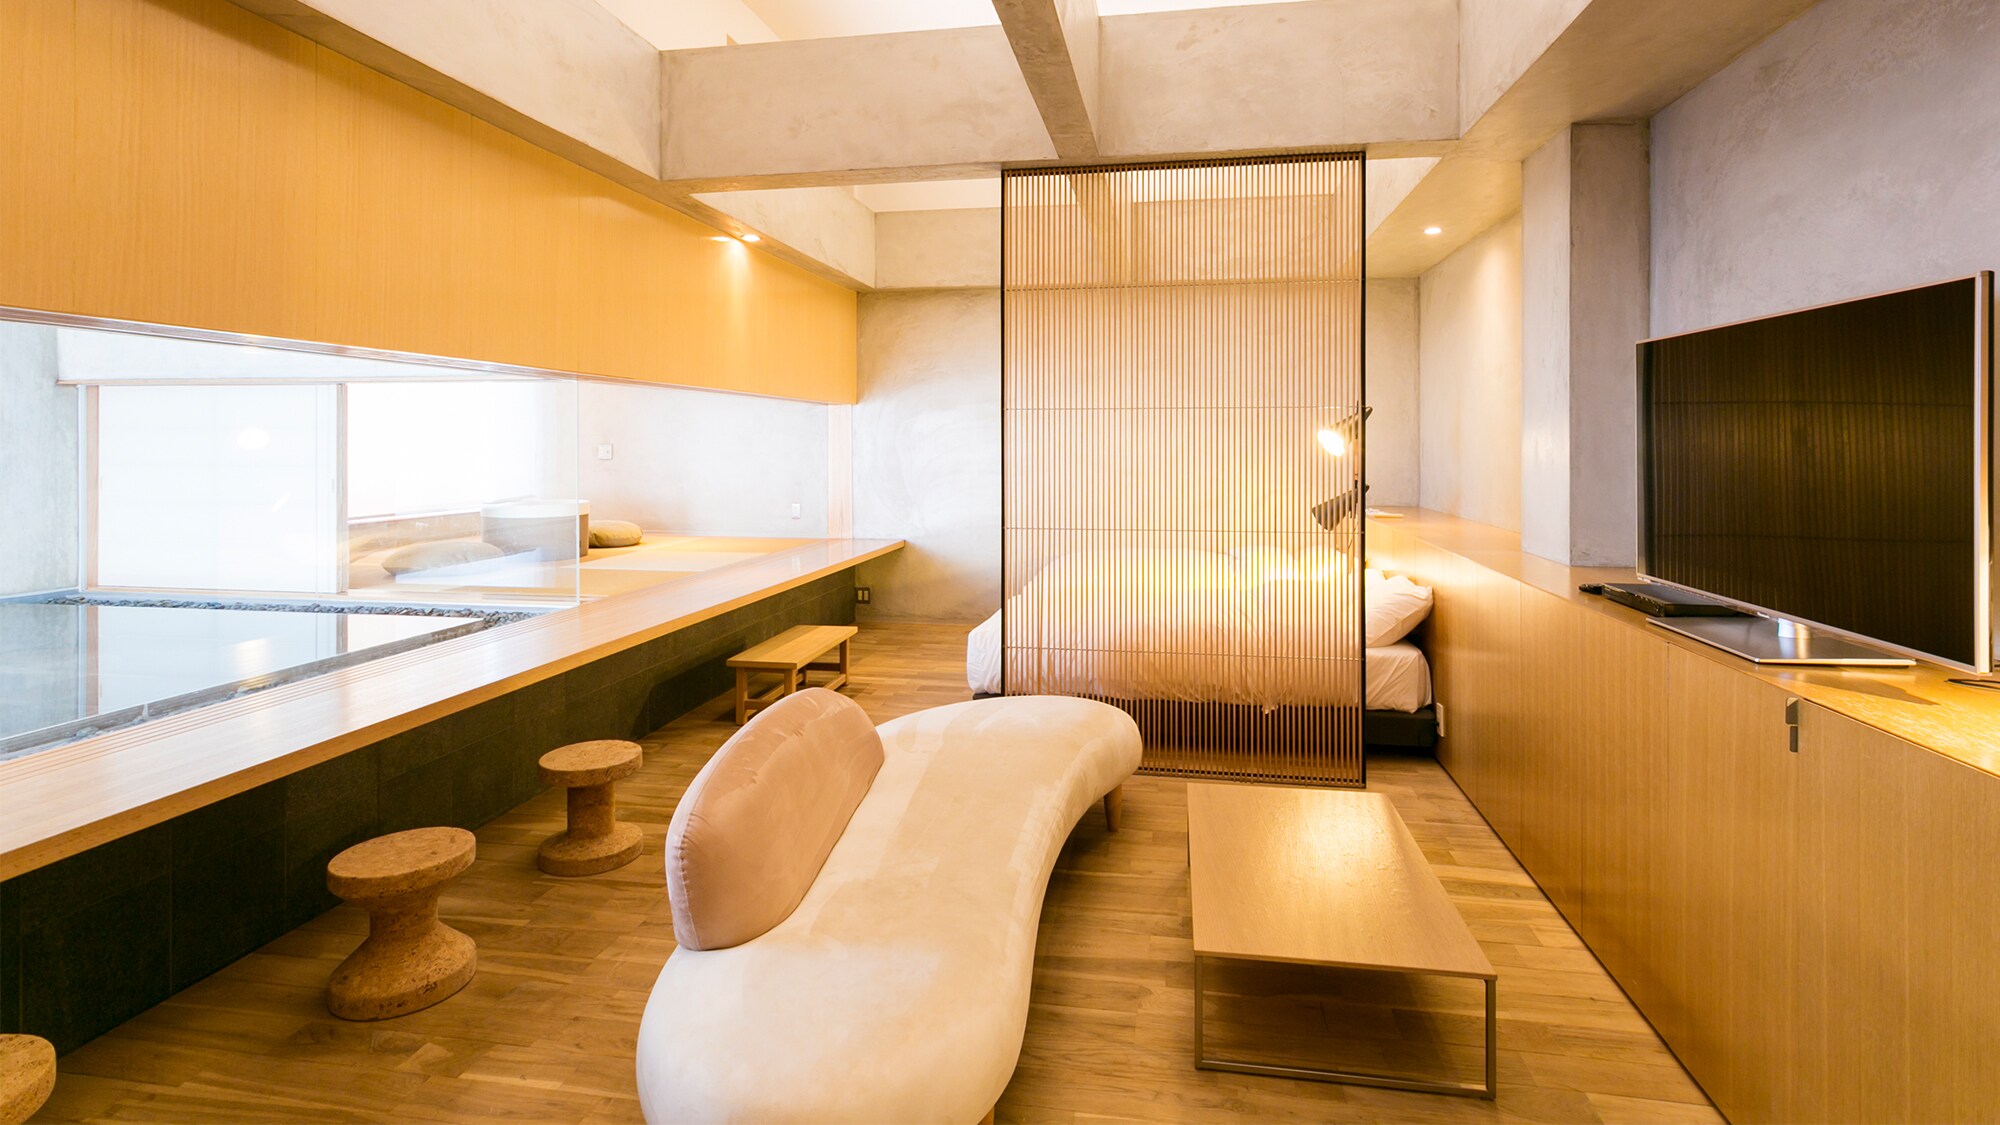 Premium Japanese and Western room with hot spring "Suzukake" -suzukake-